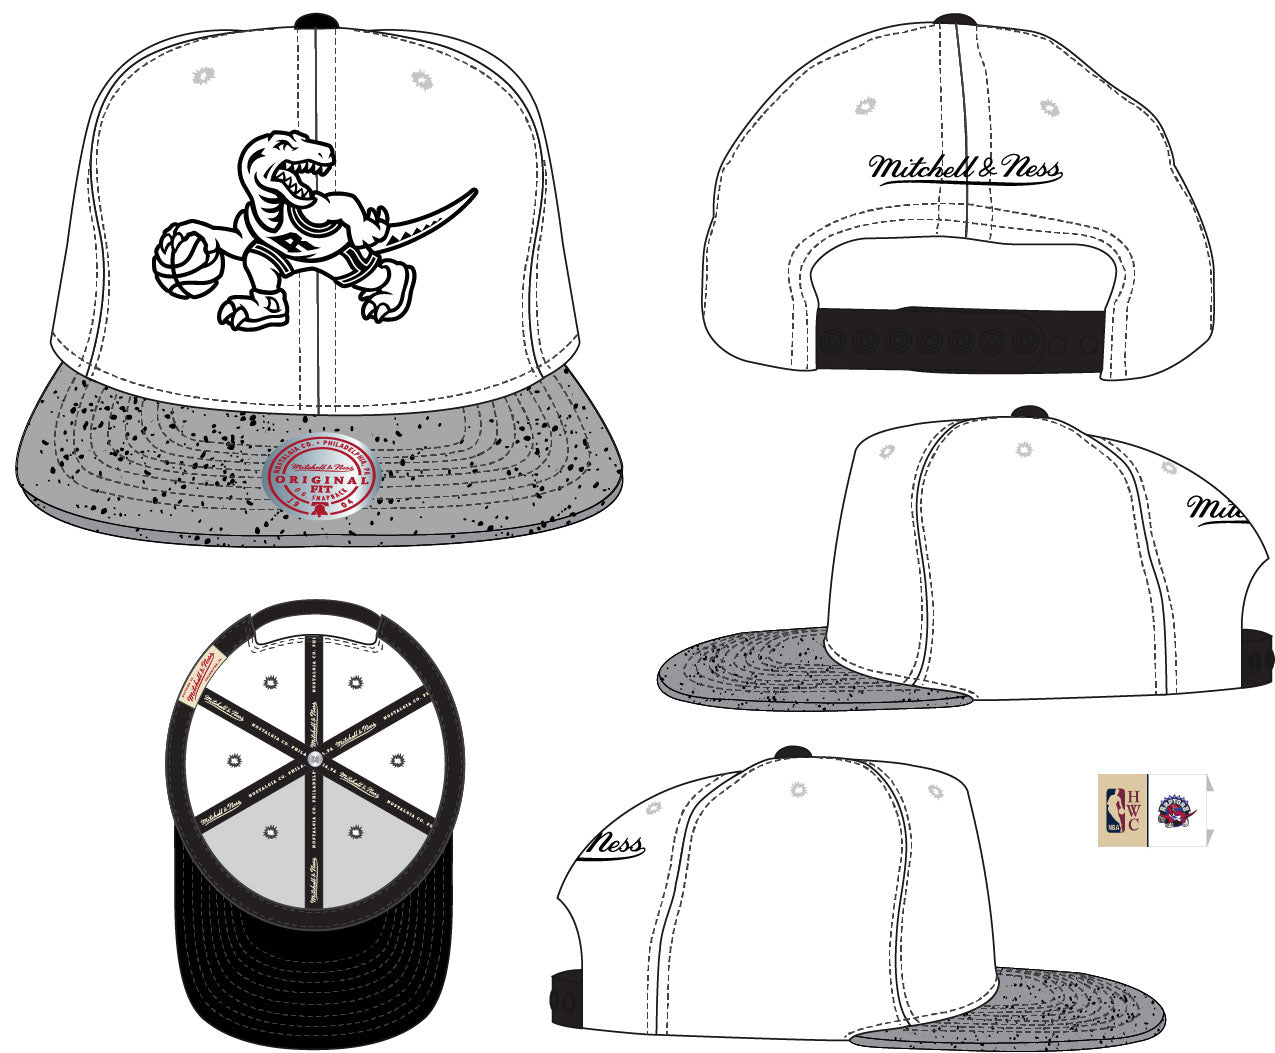 Men's Toronto Raptors NBA Cement Top HWC Mitchell & Ness Snapback Hat